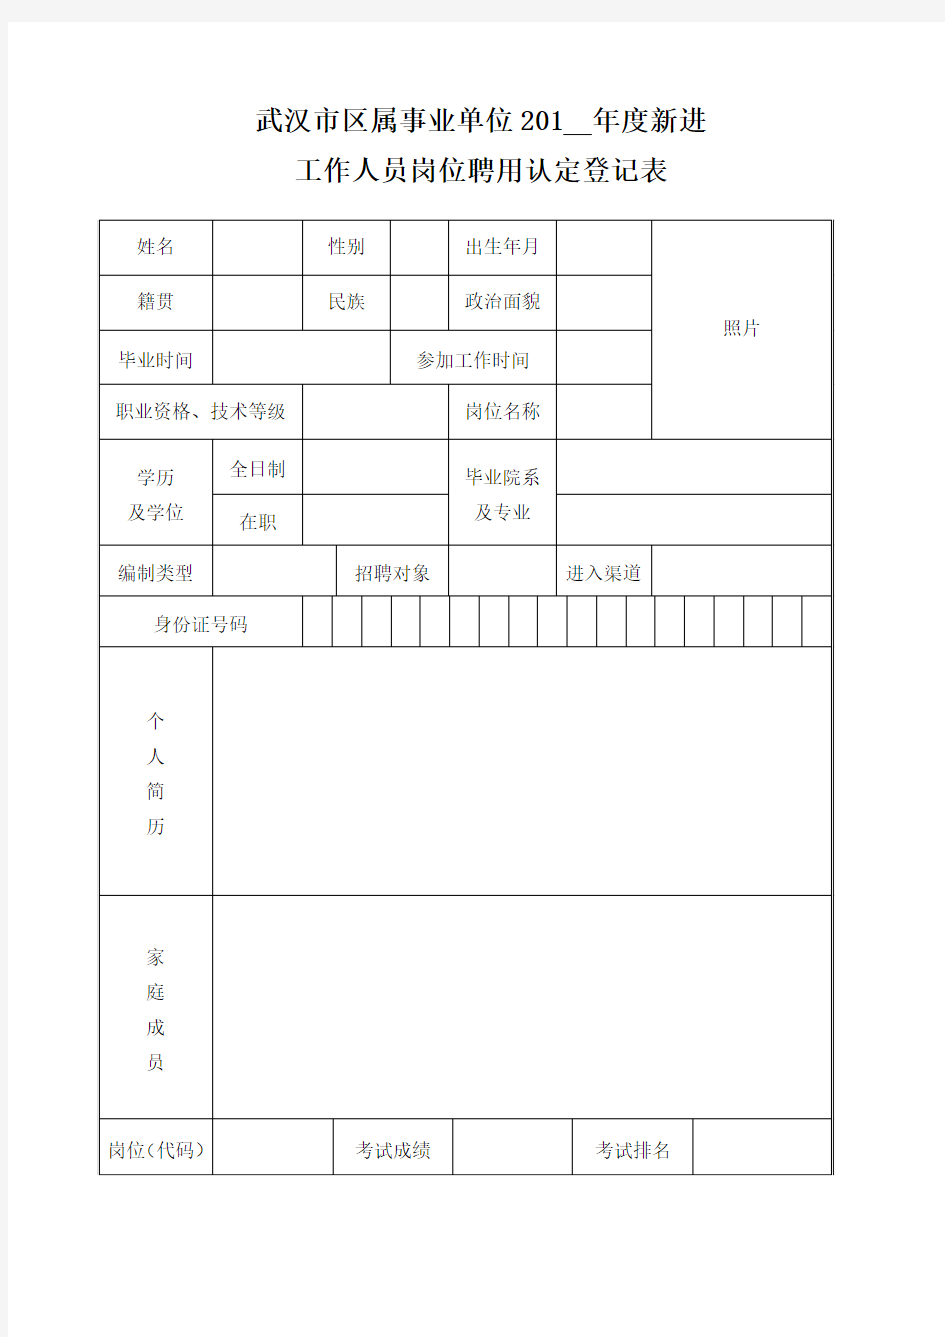 武汉市事业单位工作人员岗位聘用认定登记表-新版